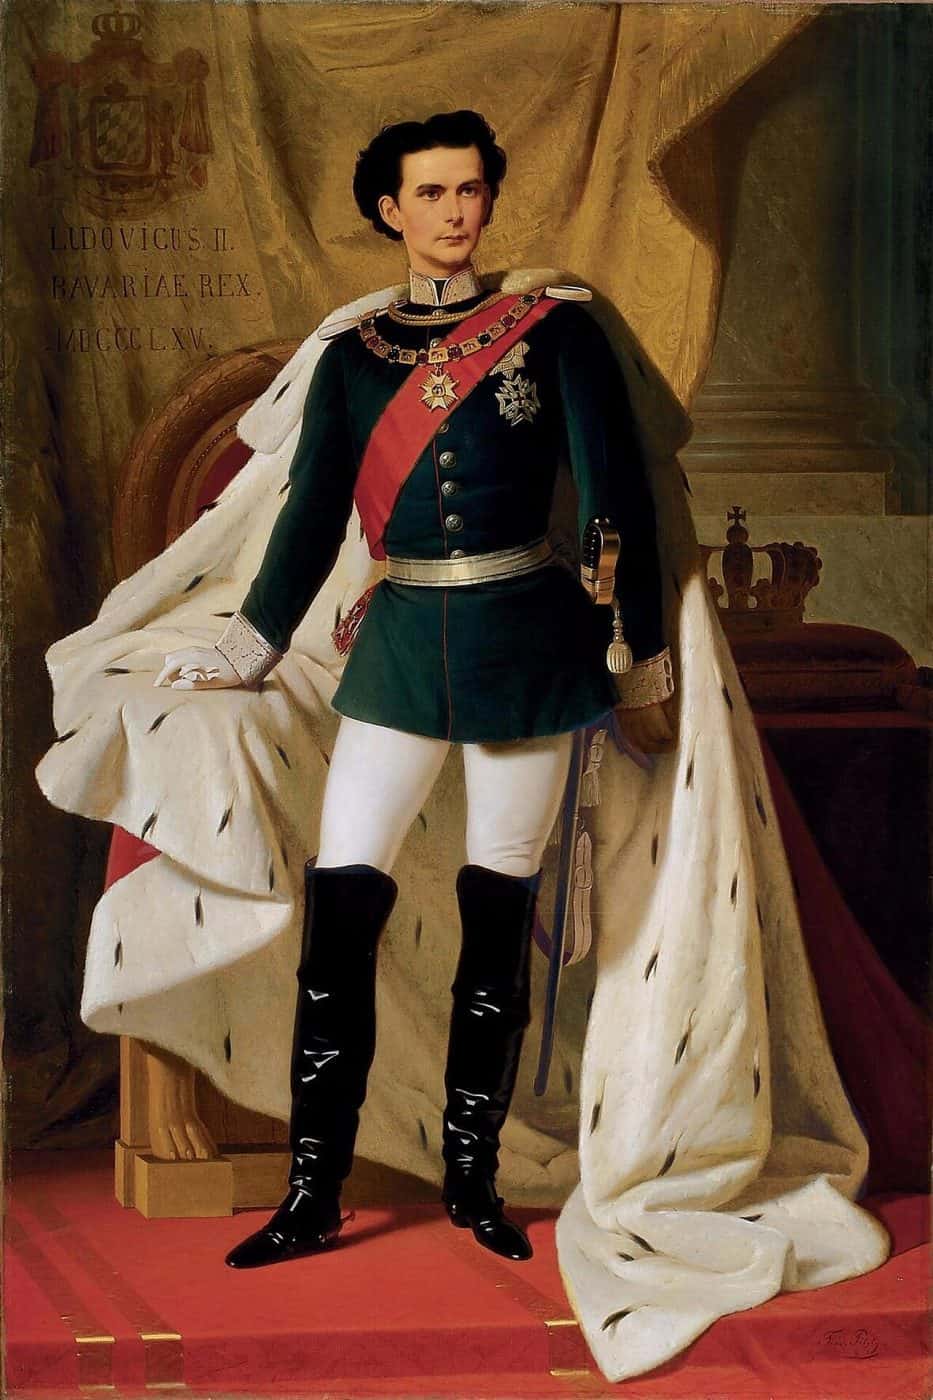 Ludwig's Coronation Portrait